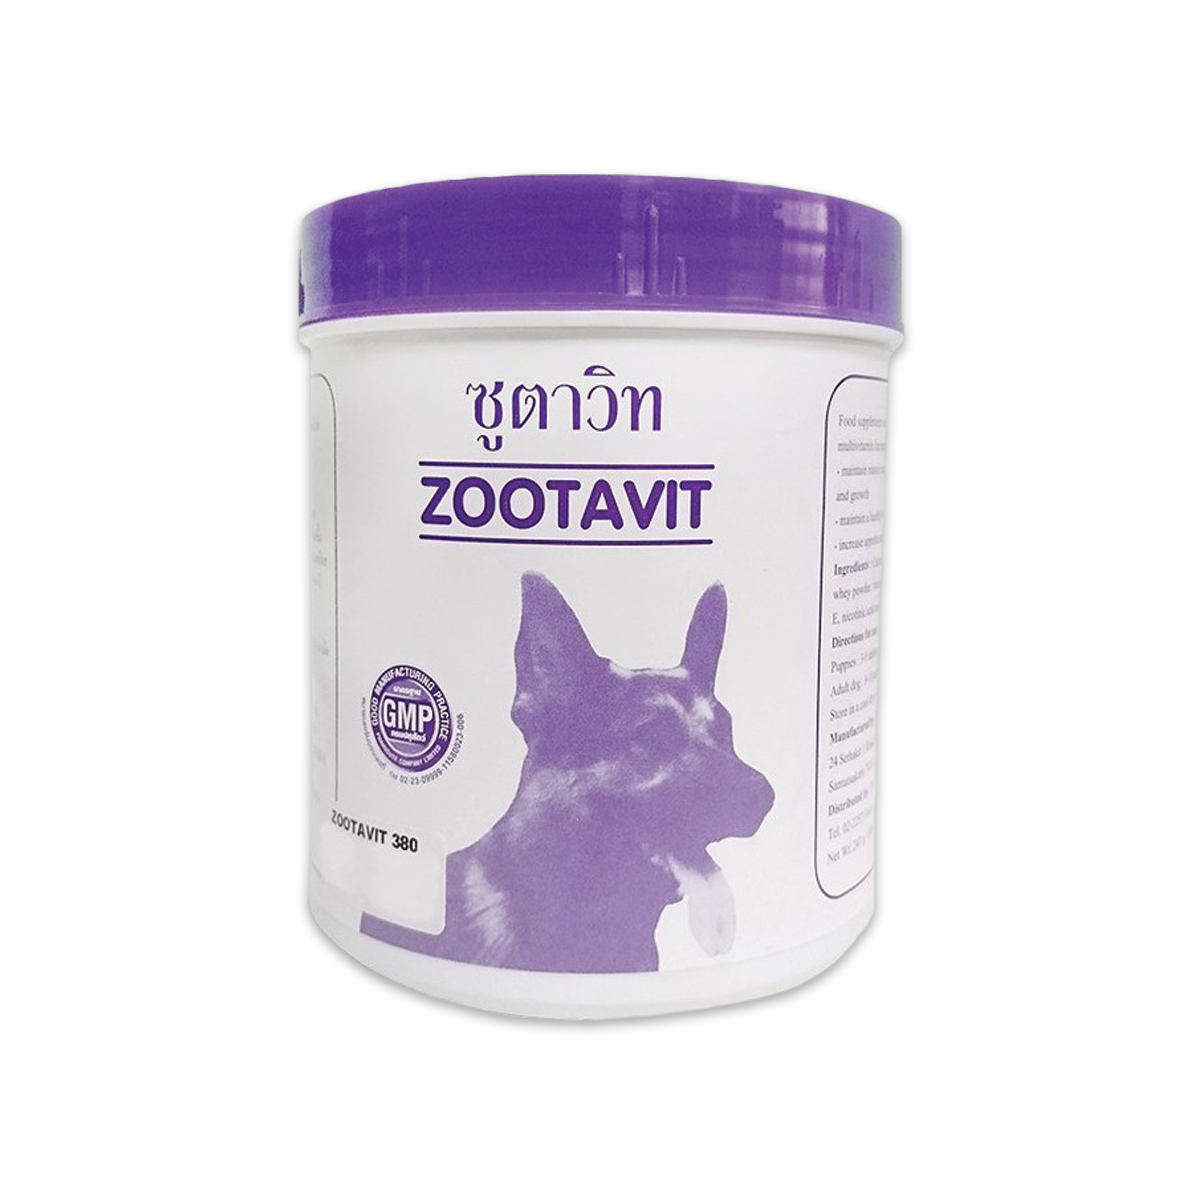 Zootavit Food supplement ซูตาวิต อาหารเสริมวิตามิน จำนวน 380 เม็ด